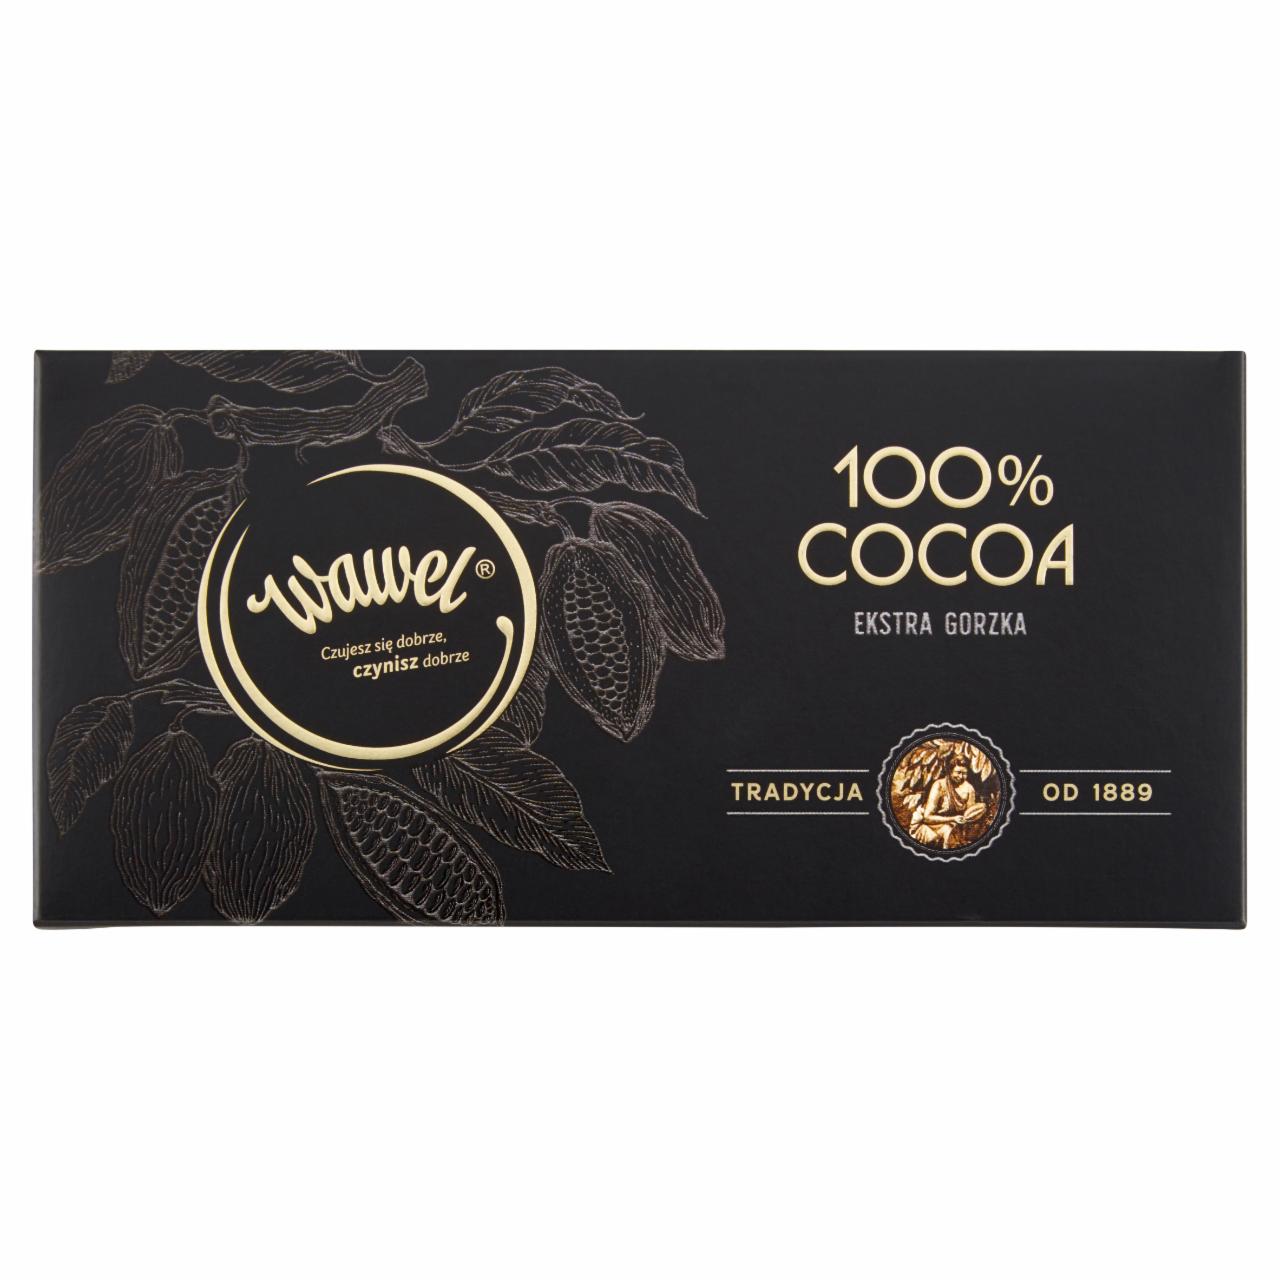 Zdjęcia - 100 % cocoa extra dark Wawel